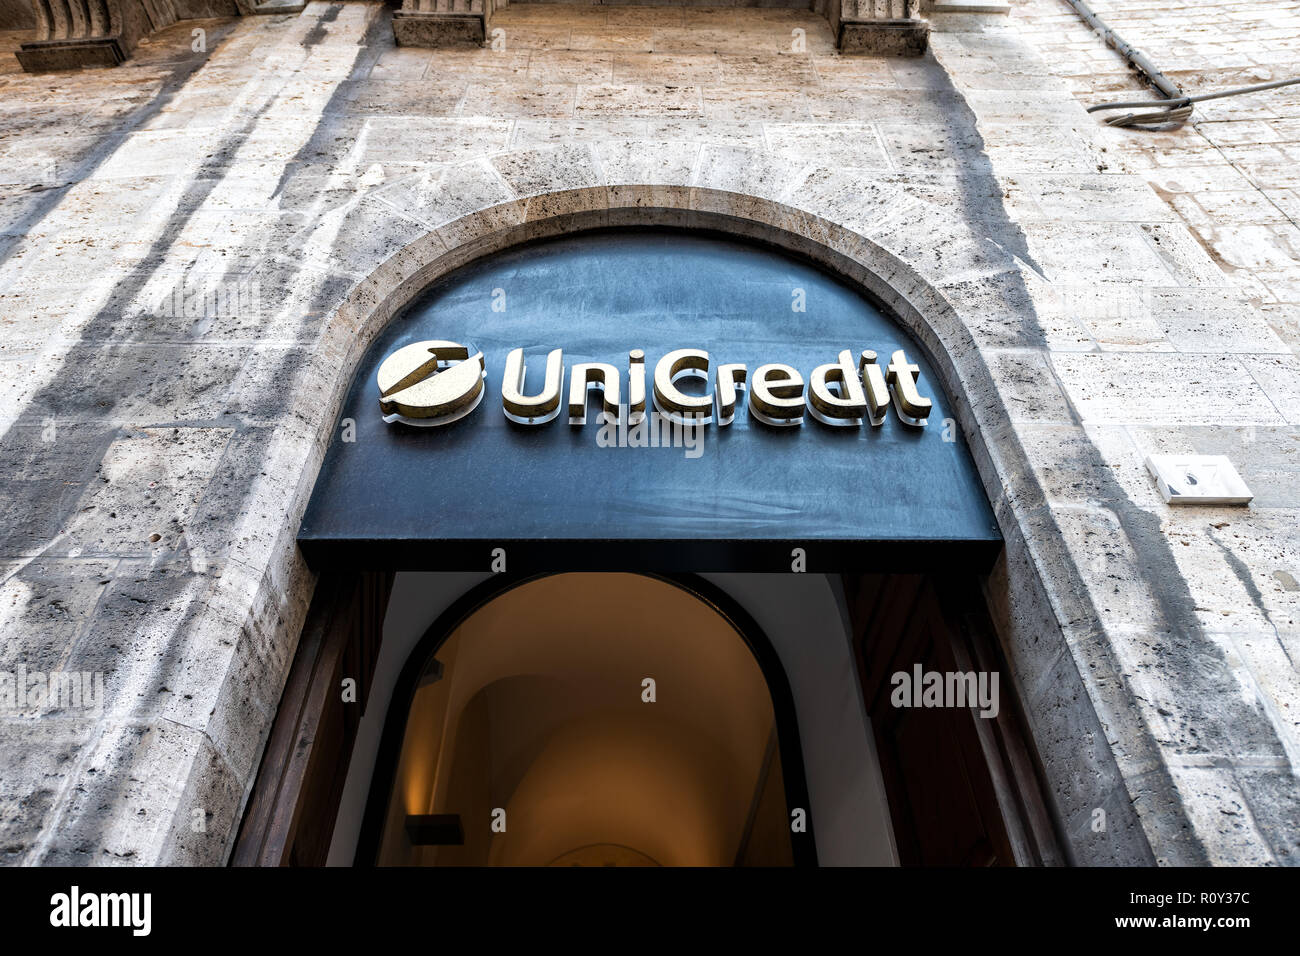 Pérouse, Italie - 29 août 2018 : Low angle, à la recherche sur façade de la banque Unicredit bureau, direction signe avec de vieux, vieux, antique, médiévale arch Banque D'Images